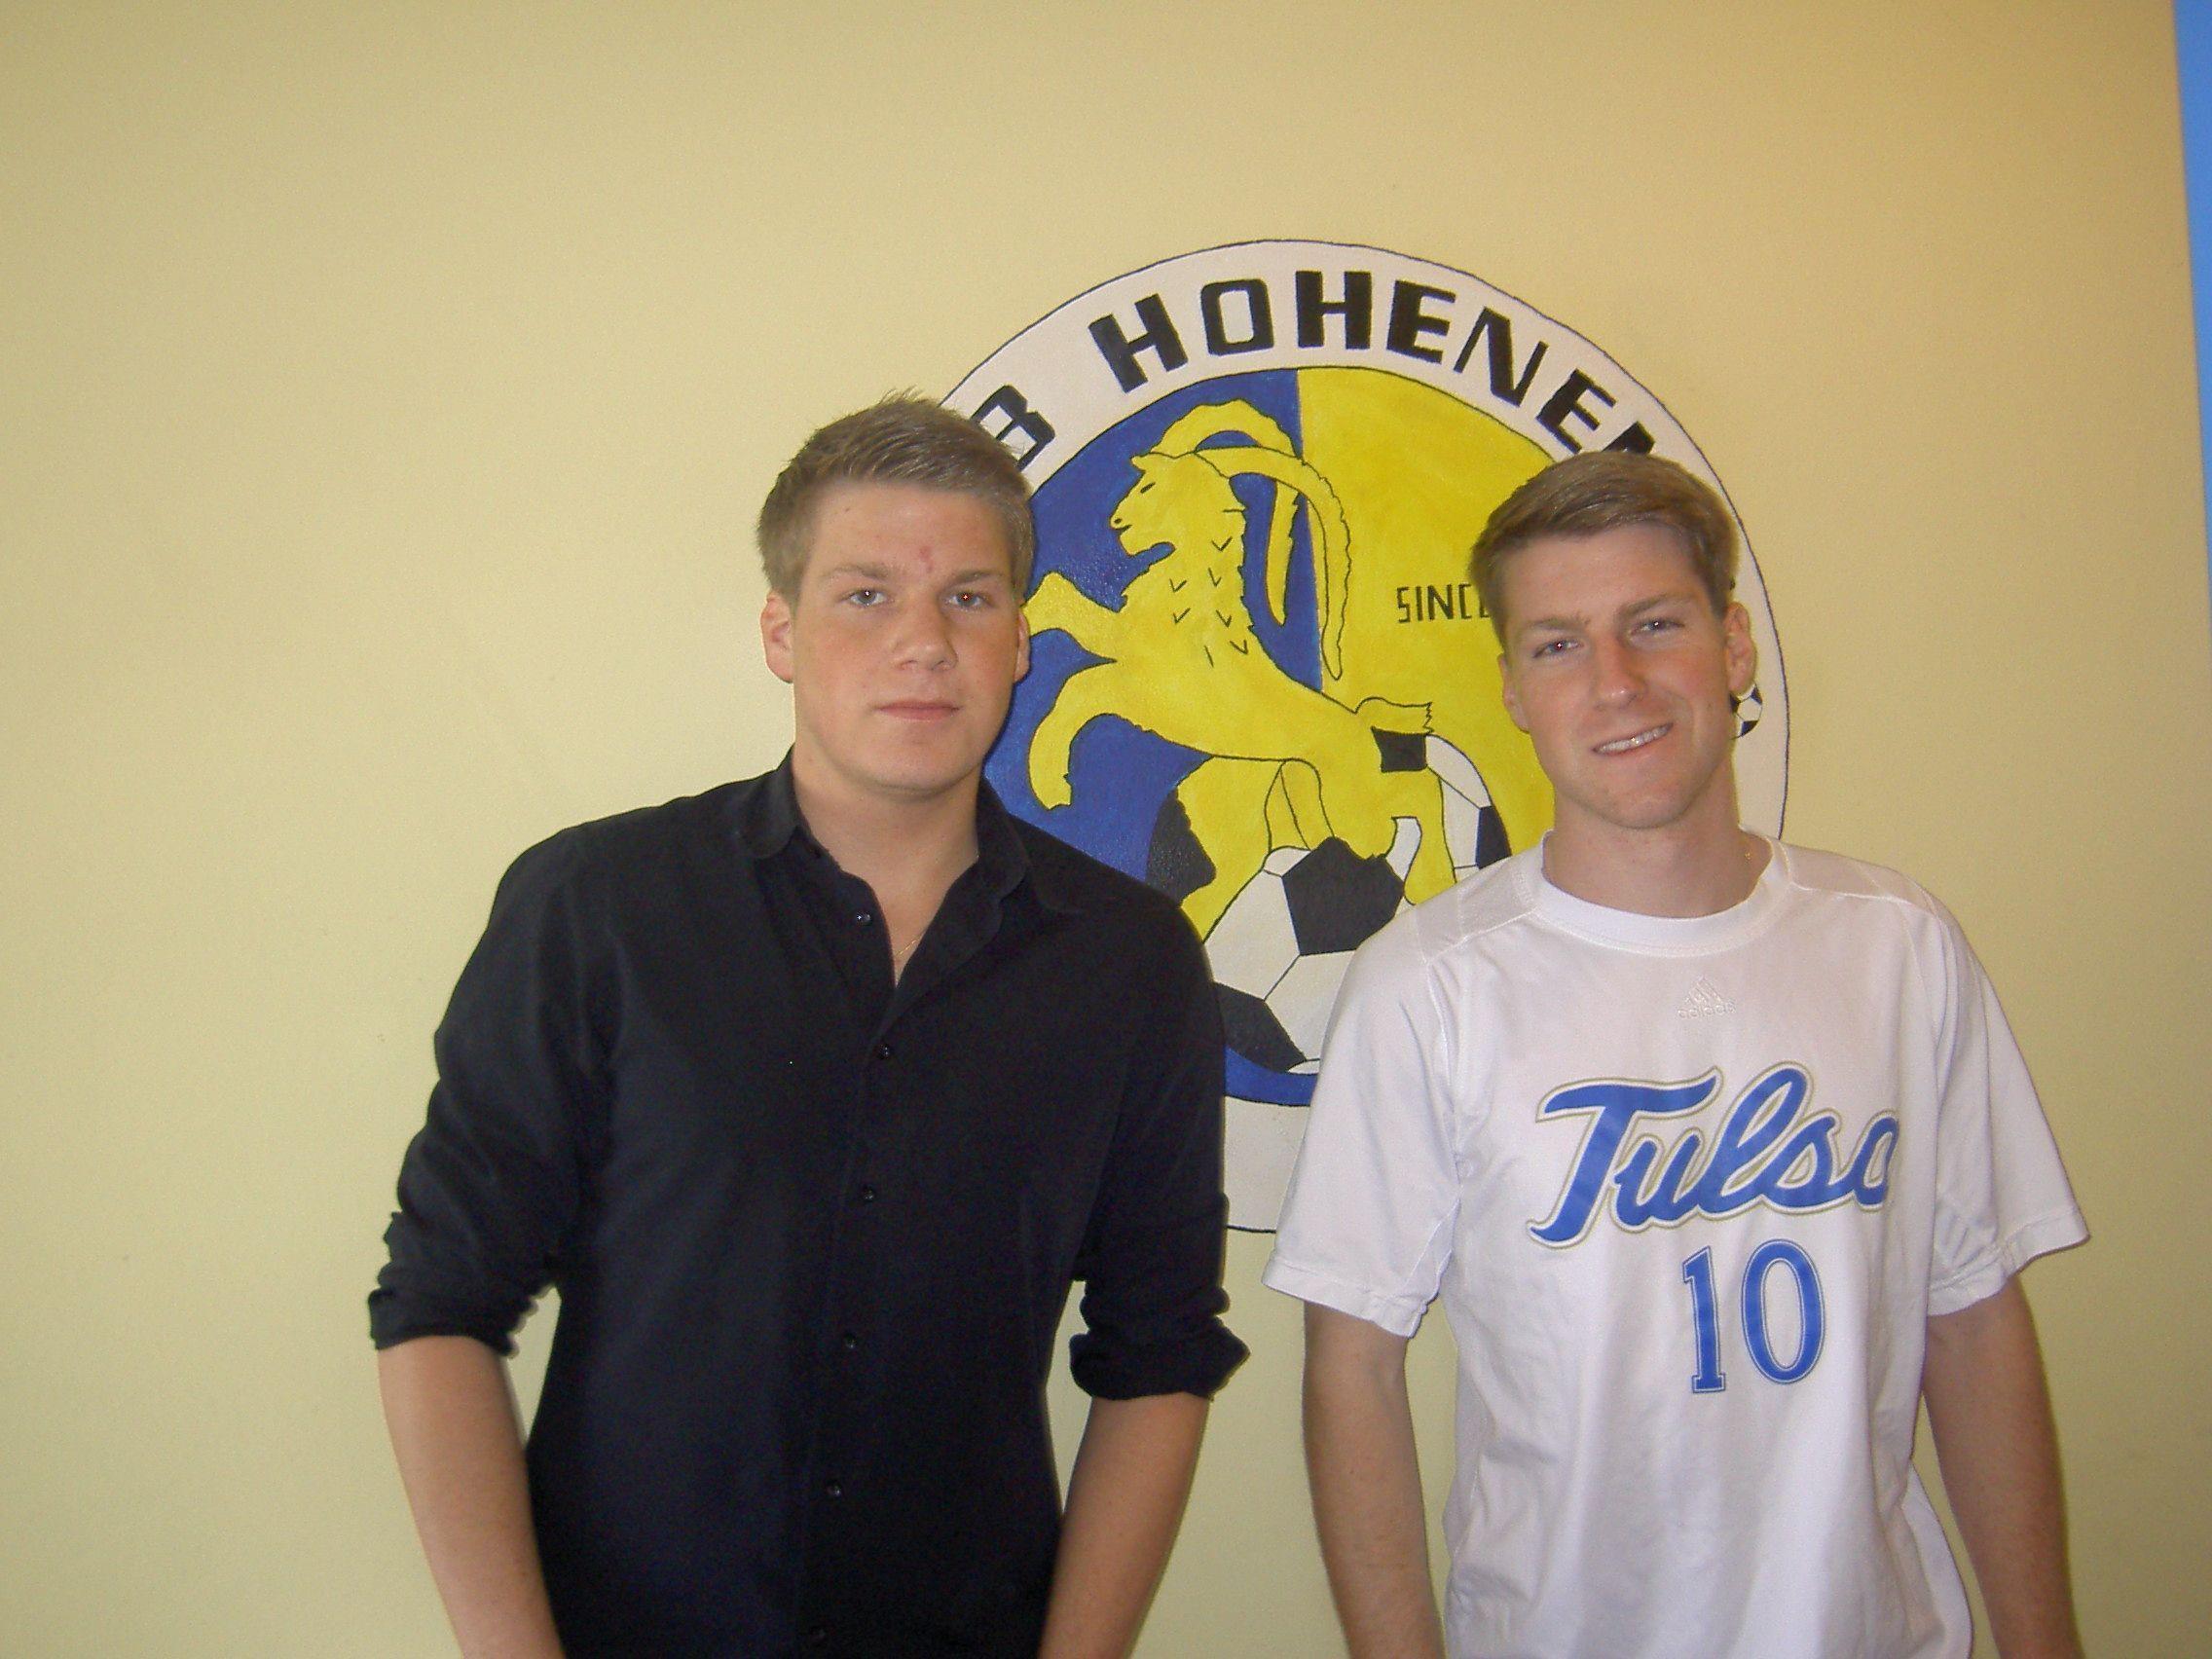 Das Brüderpaar Adrian und Johannes Klammer kickt beim Stammklub VfB Hohenems.